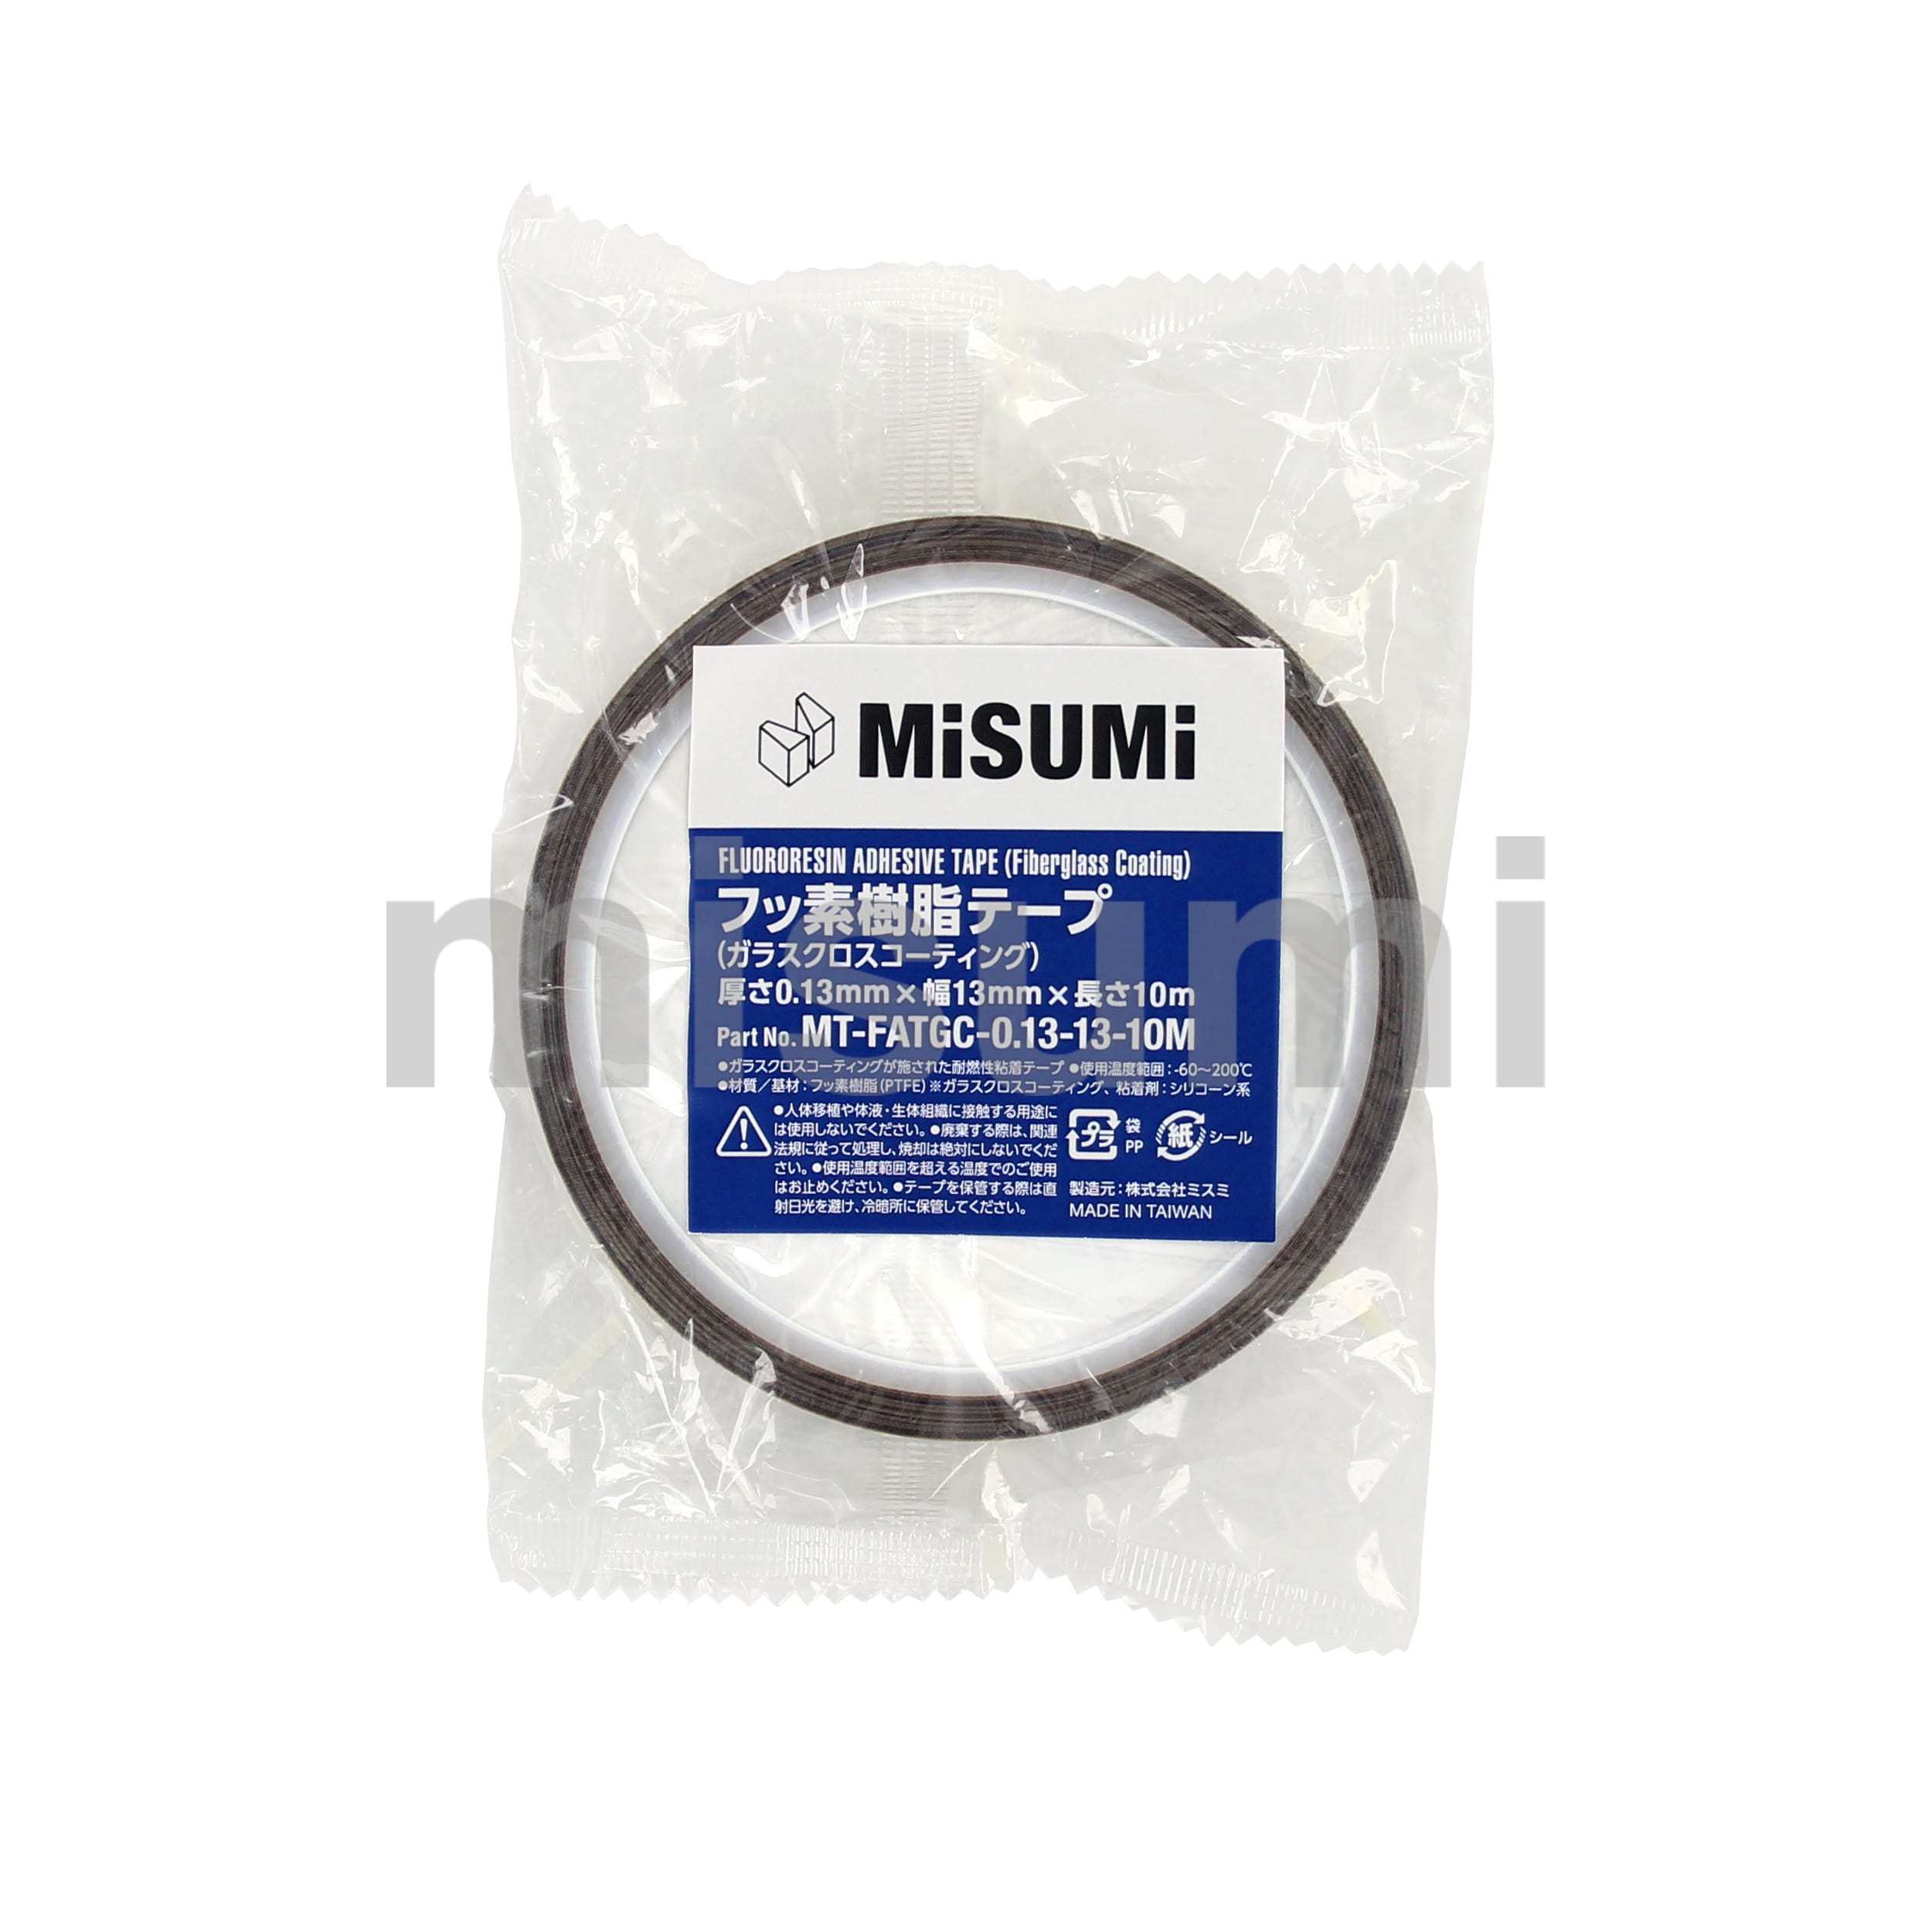 チューコーフロー ふっ素樹脂フィルム粘着テープ（極薄・着色タイプ） 中興化成工業 MISUMI(ミスミ)